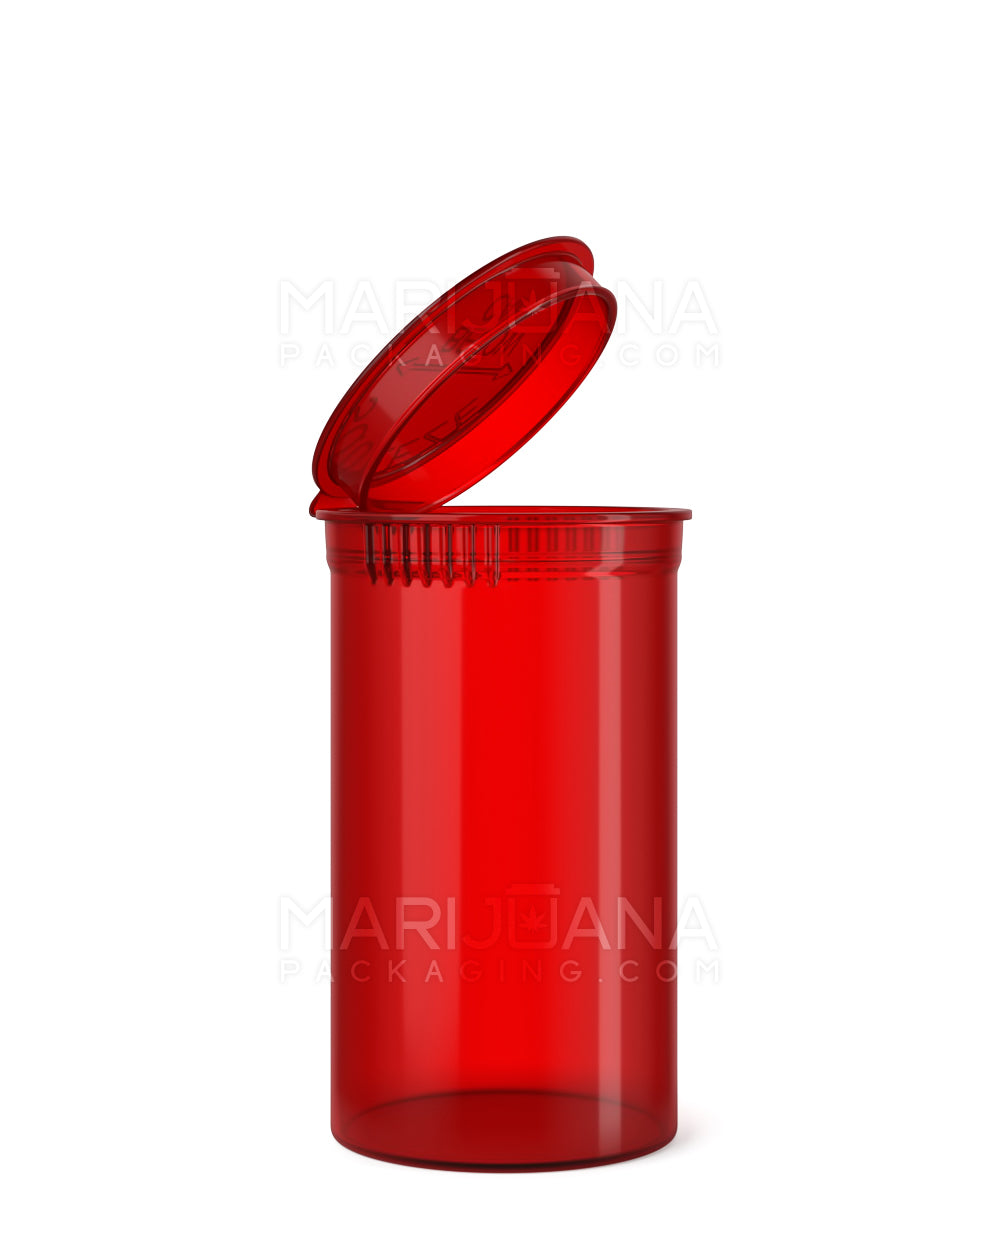 Child Resistant | Transparent Red Pop Top Bottles | 19dr - 3.5g - 225 Count - 1